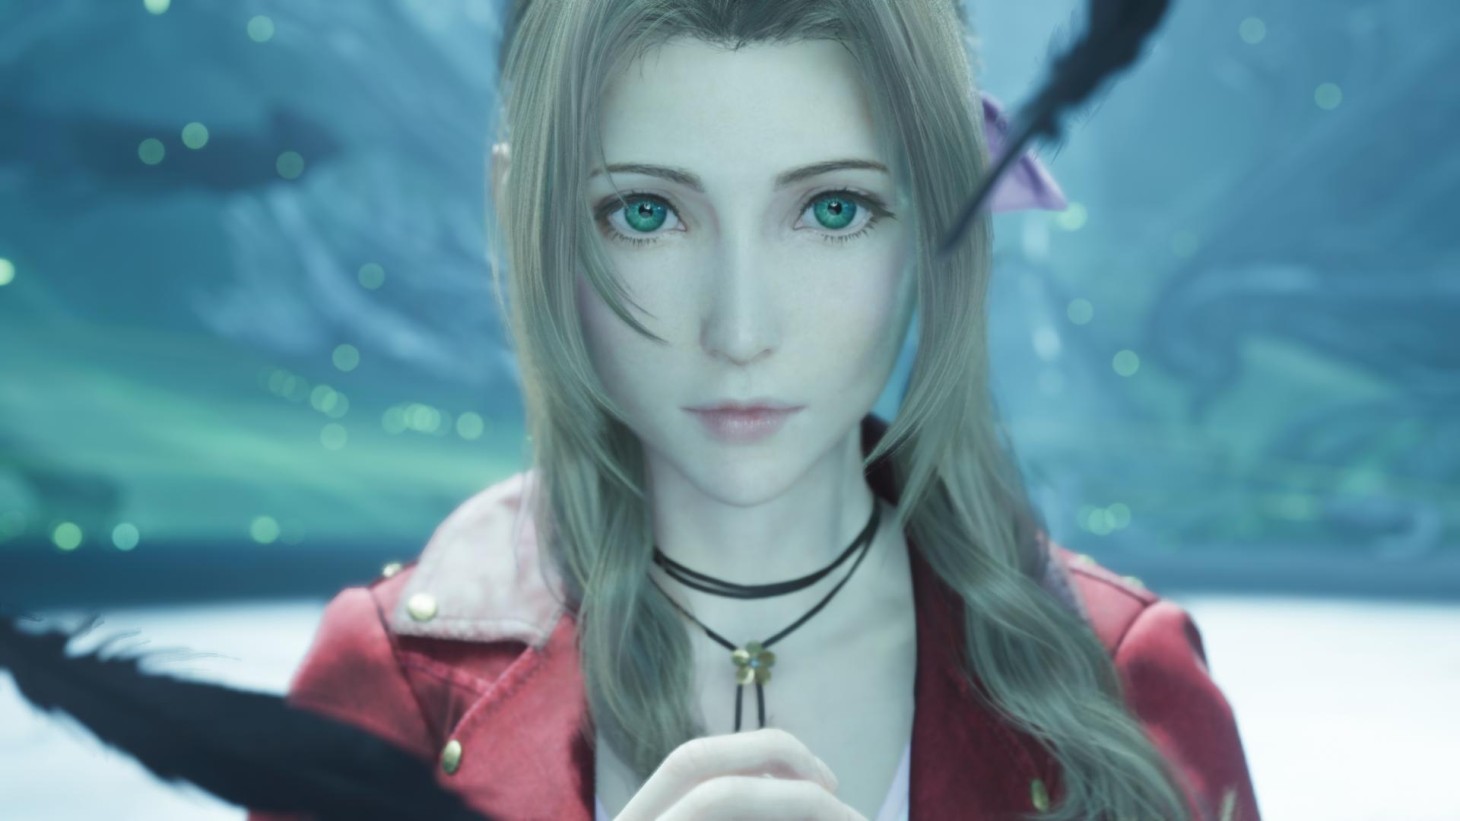 Final Fantasy VII Rebirth Preview - Square Enix Talks Aerith's Big